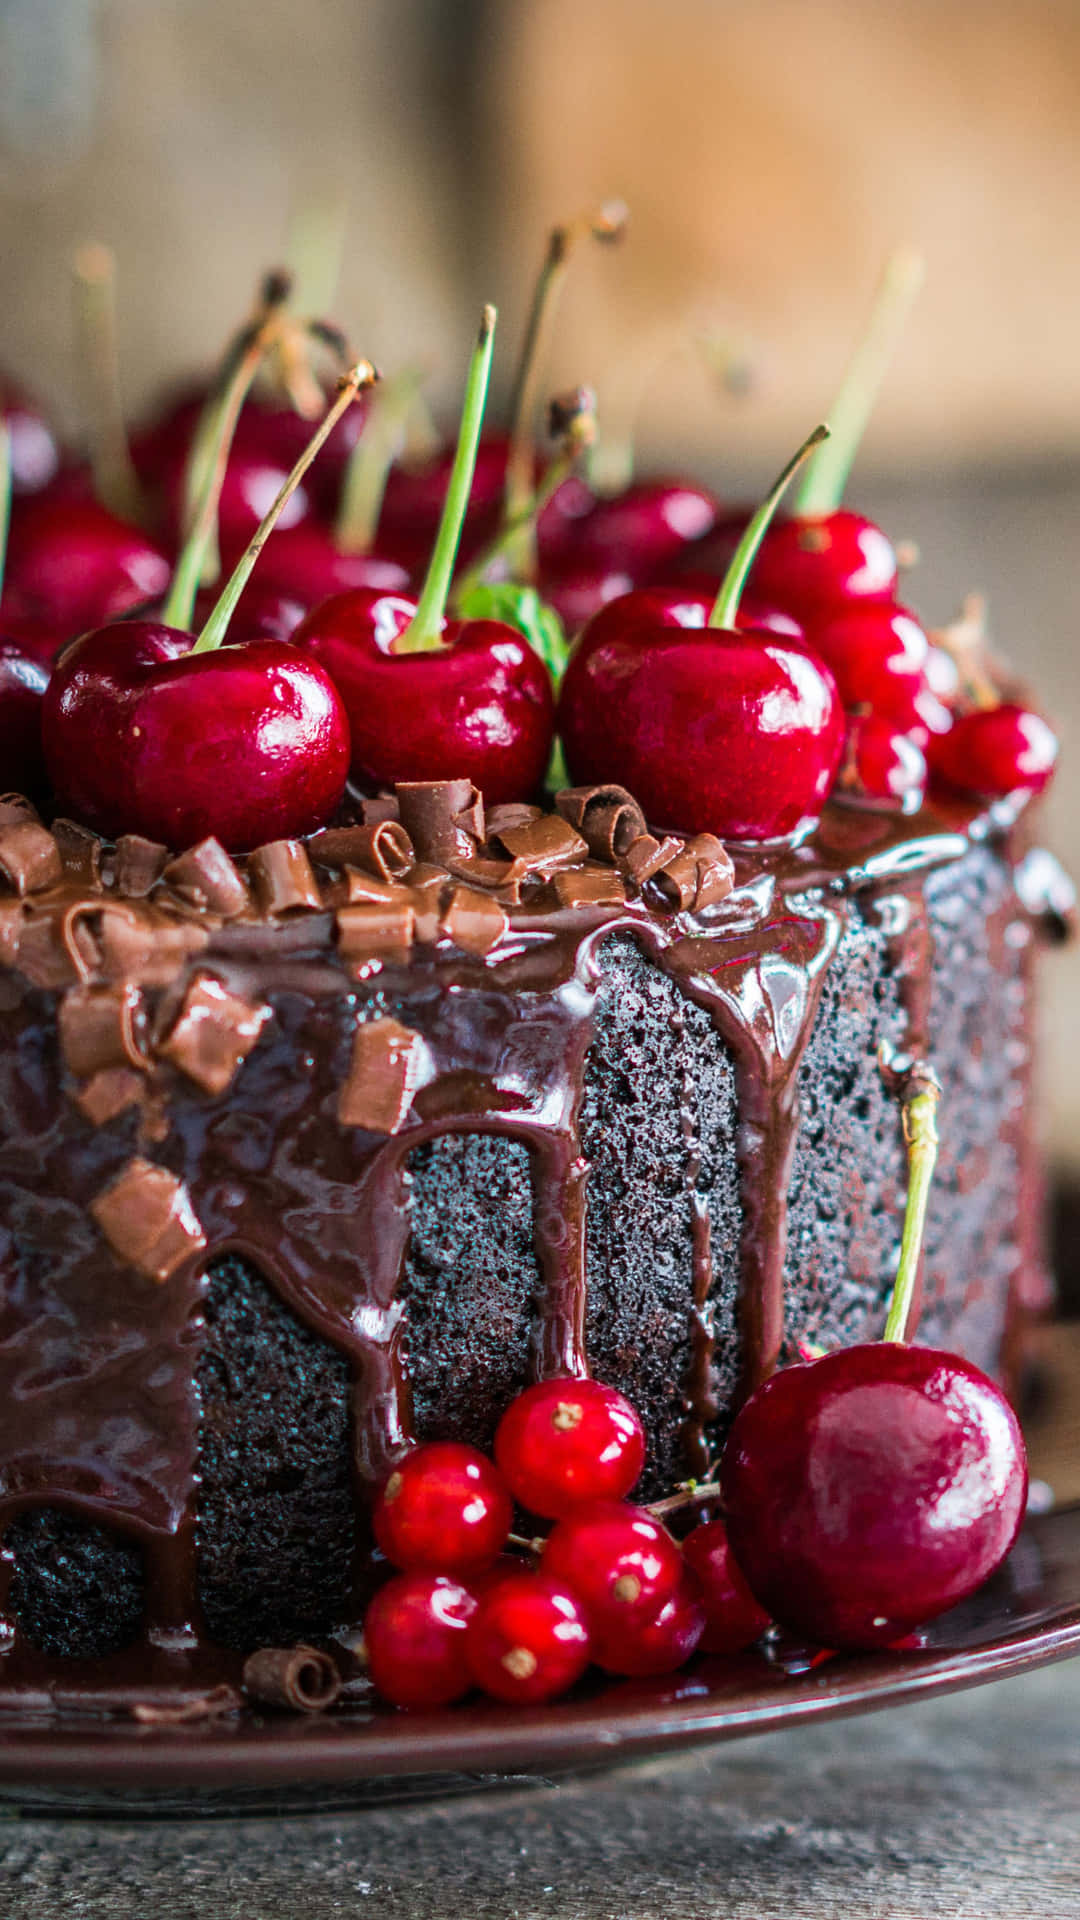 Chocolate Cake With Cherries Dessert iPhone Wallpaper